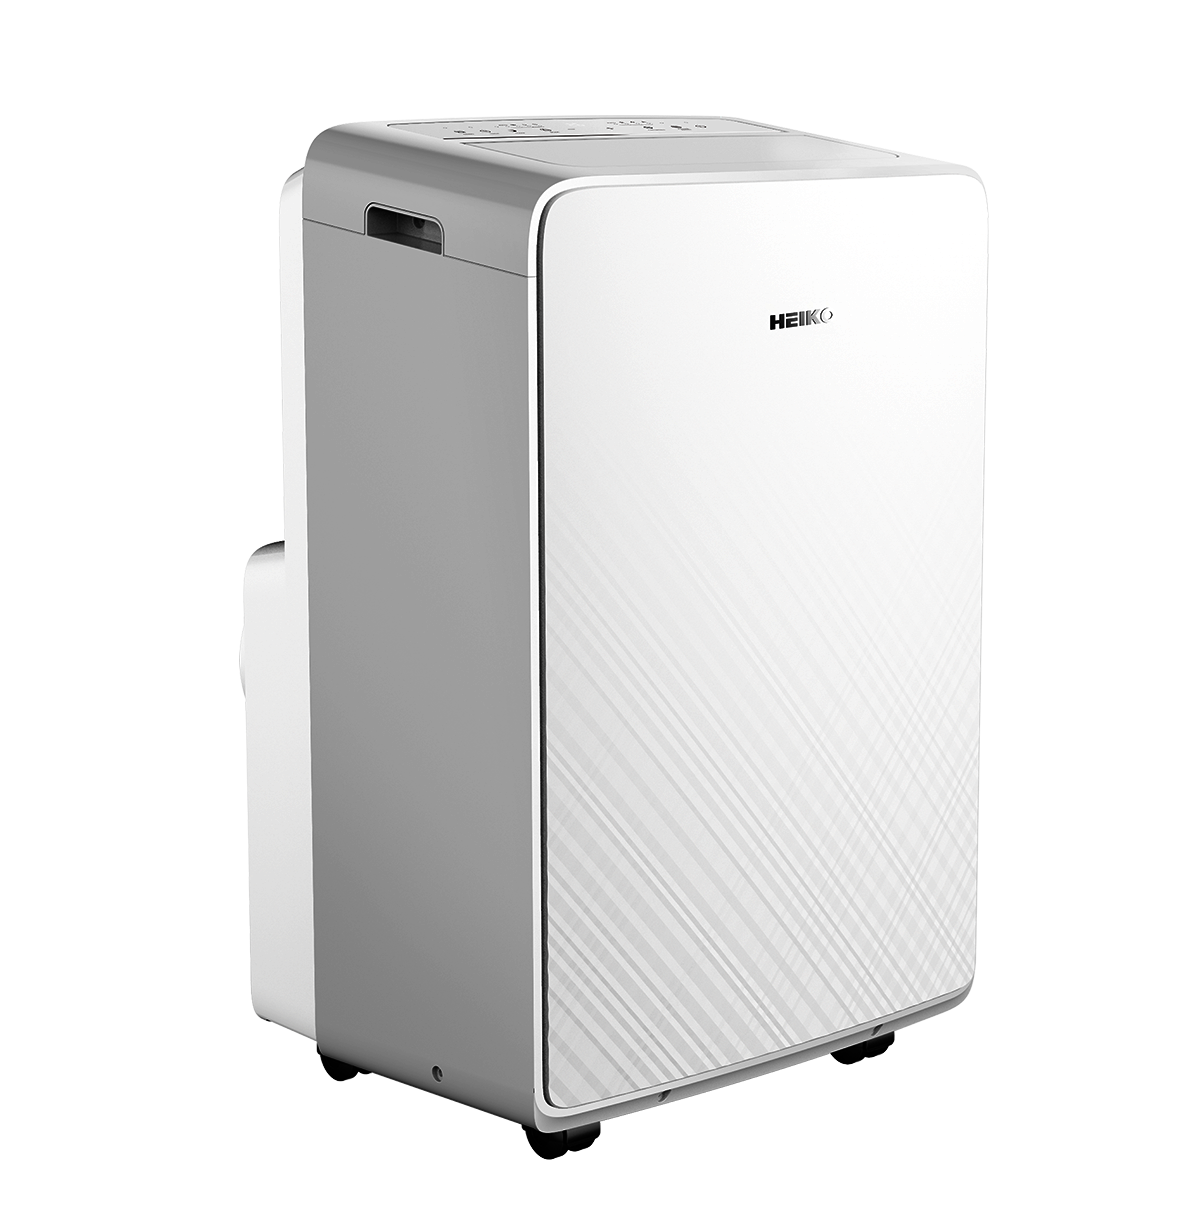 Portable HEIKO 3.4kW air conditioner